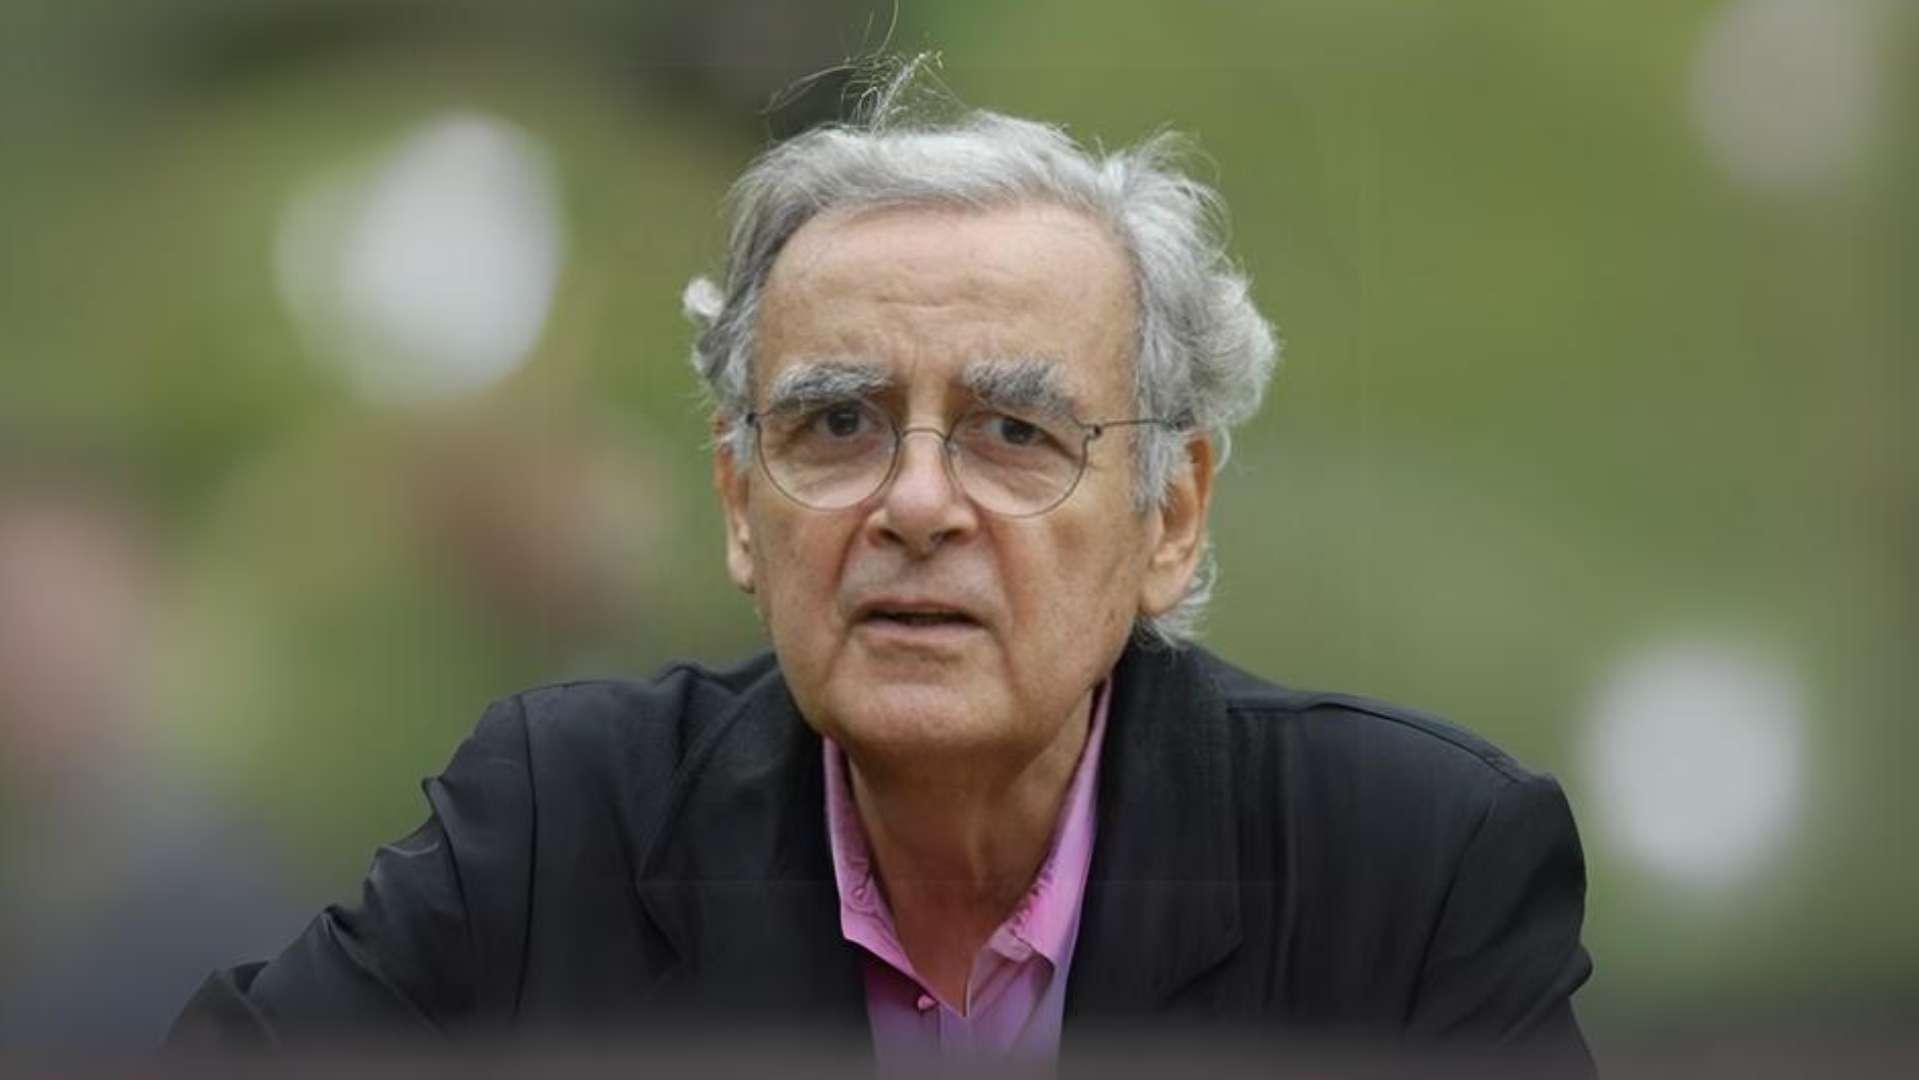  Bernard Pivot, présentateur et écrivain, est mort à l'âge de 89 ans